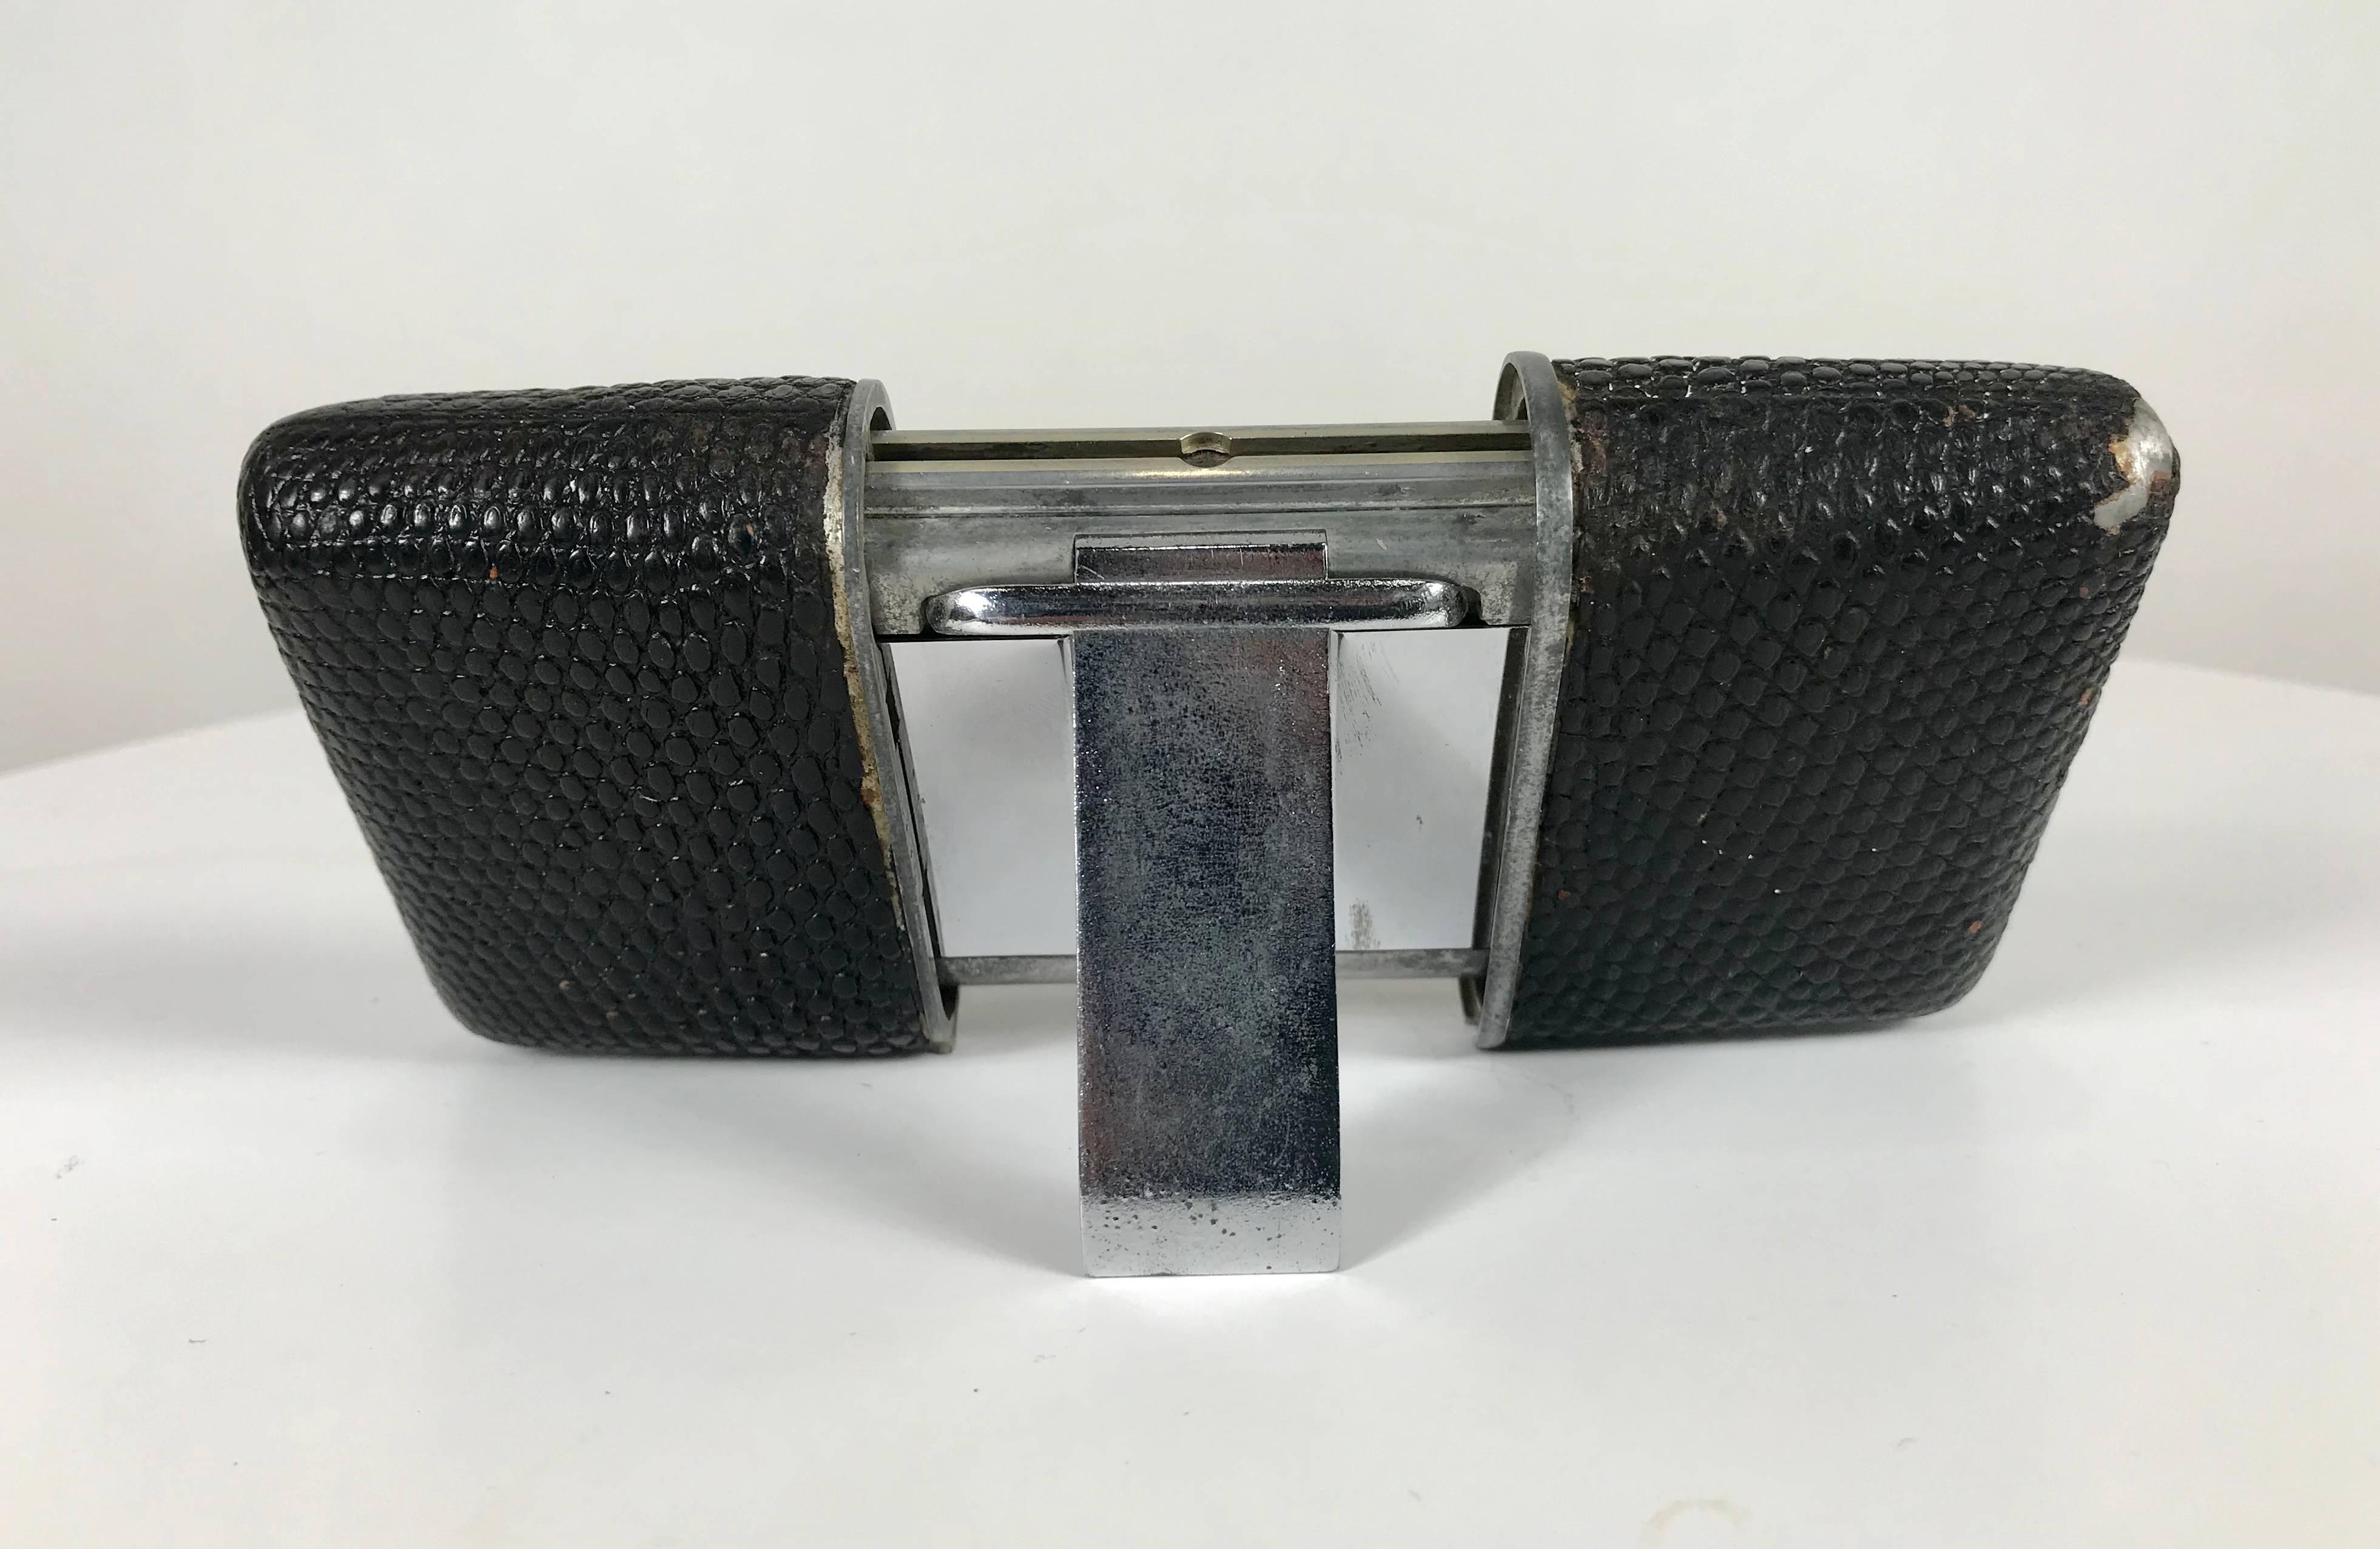 Frühe Movado Ermeto für Hermes Reiseuhr aus Leder und Stahl, seltene Version mit schwarzem Zifferblatt mit Leuchtzeigern und Zeitmarkierungen, funktioniert perfekt, Leder bis zur Ecke getragen.